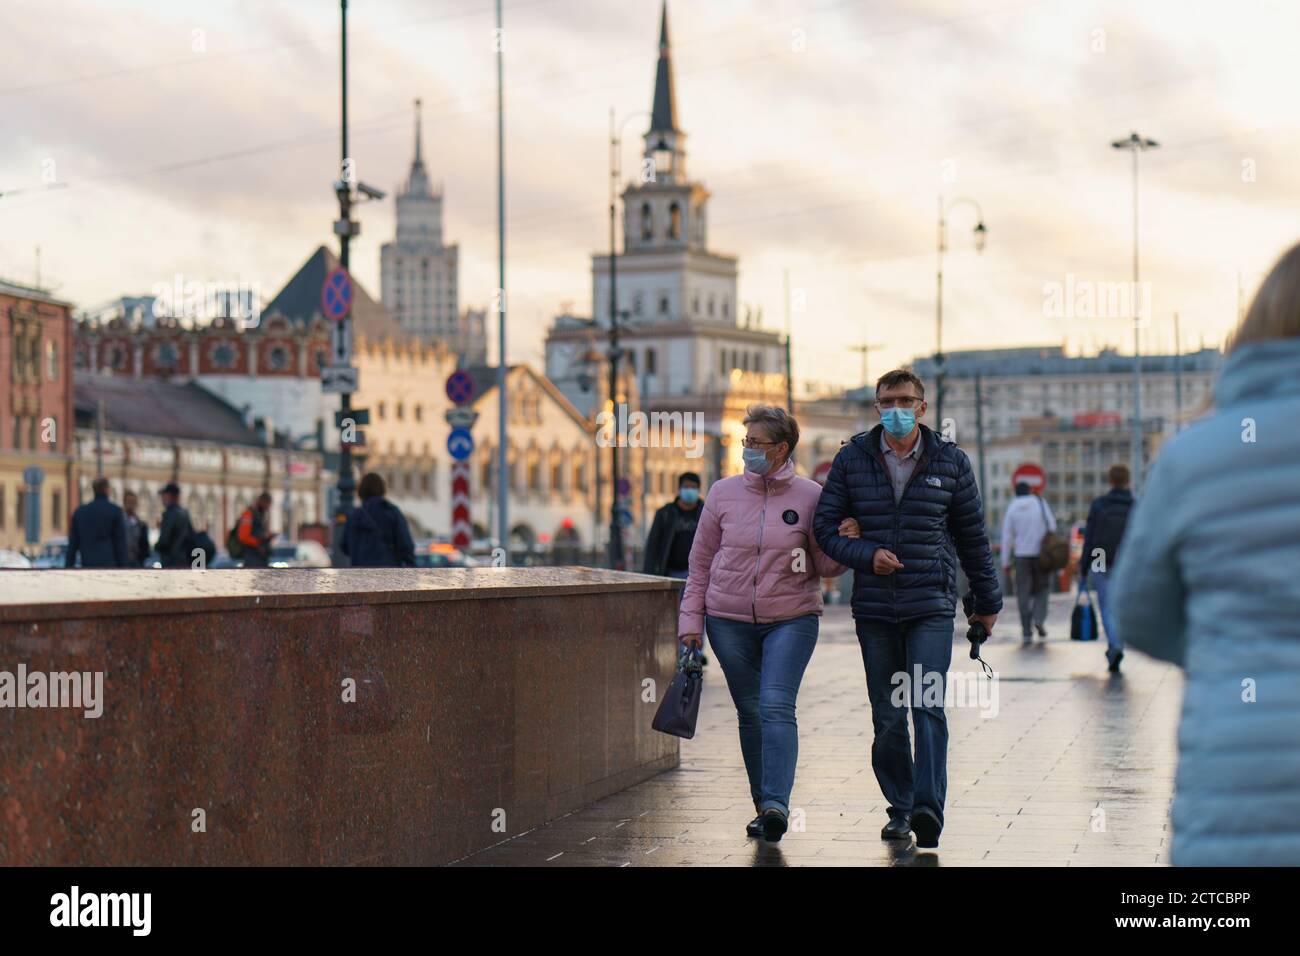 Moscou, Russie - 10 septembre 2020 : paysage urbain de Moscou au coucher du soleil après la pluie. Une paire d'hommes d'âge moyen et une femme ont mis un masque de protection. Coronaviru Banque D'Images